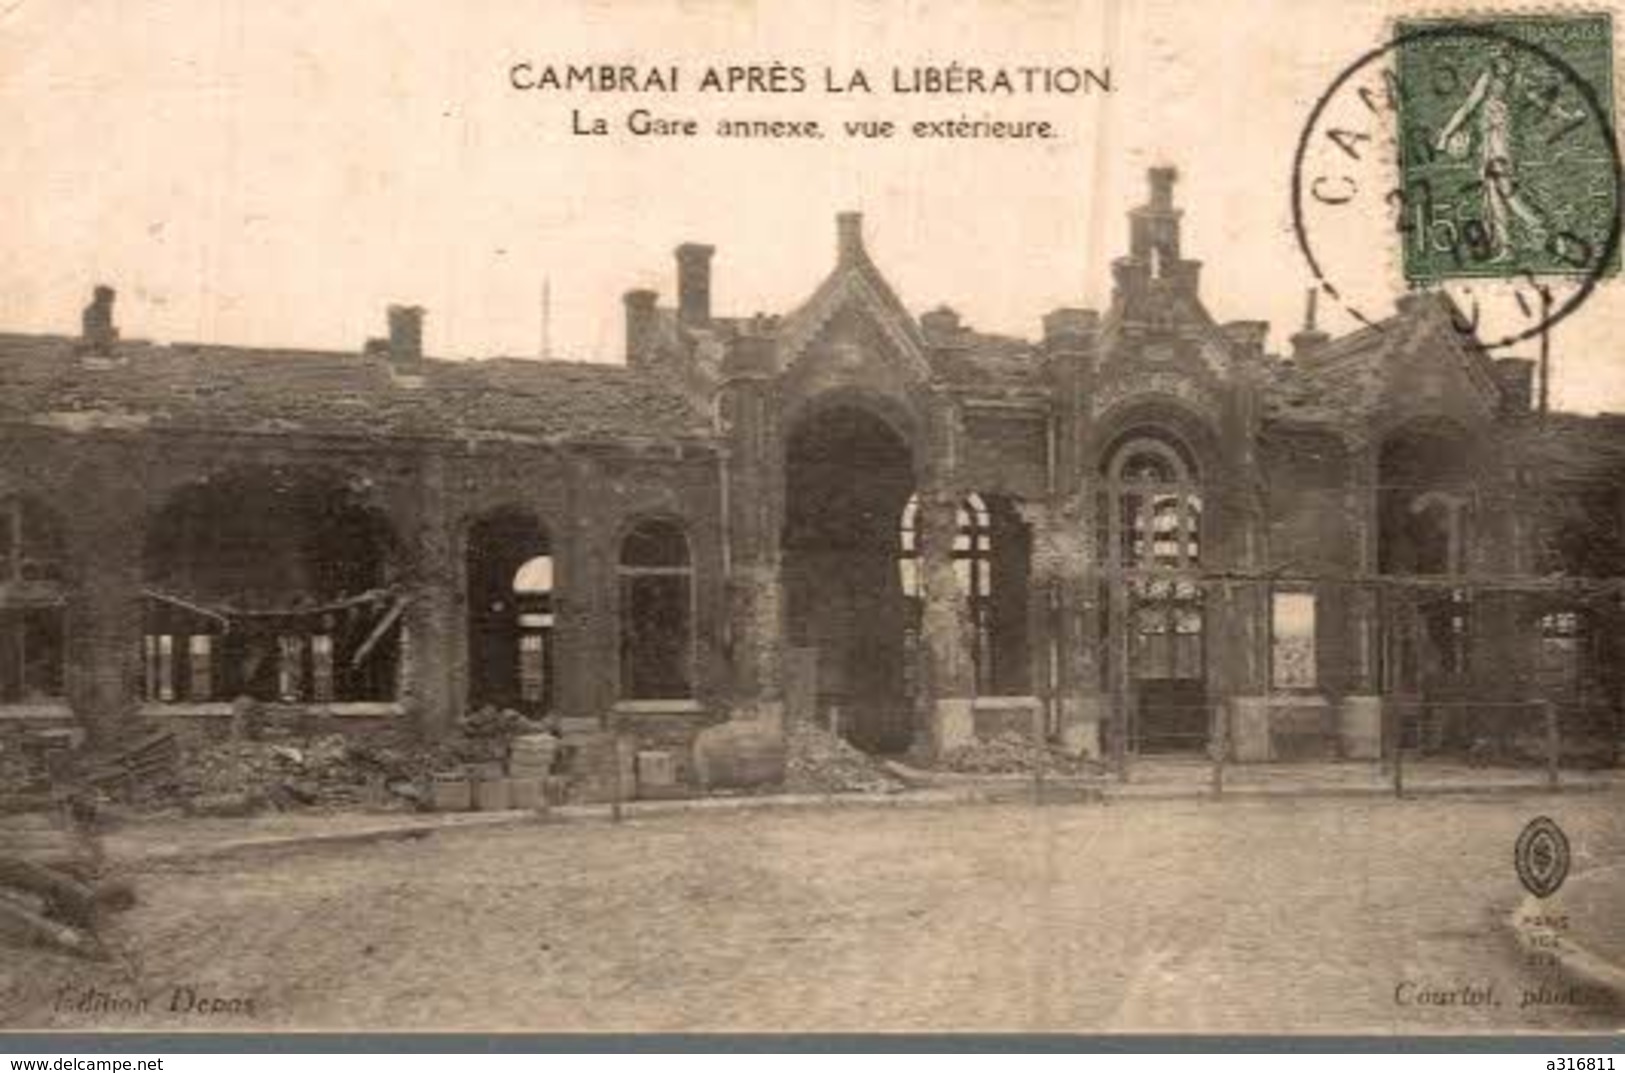 CAMBRAI APRES LA LIBERATION - LA GARE ANNEXE VUE DE L'EXTERIEUR - Guerre 1914-18